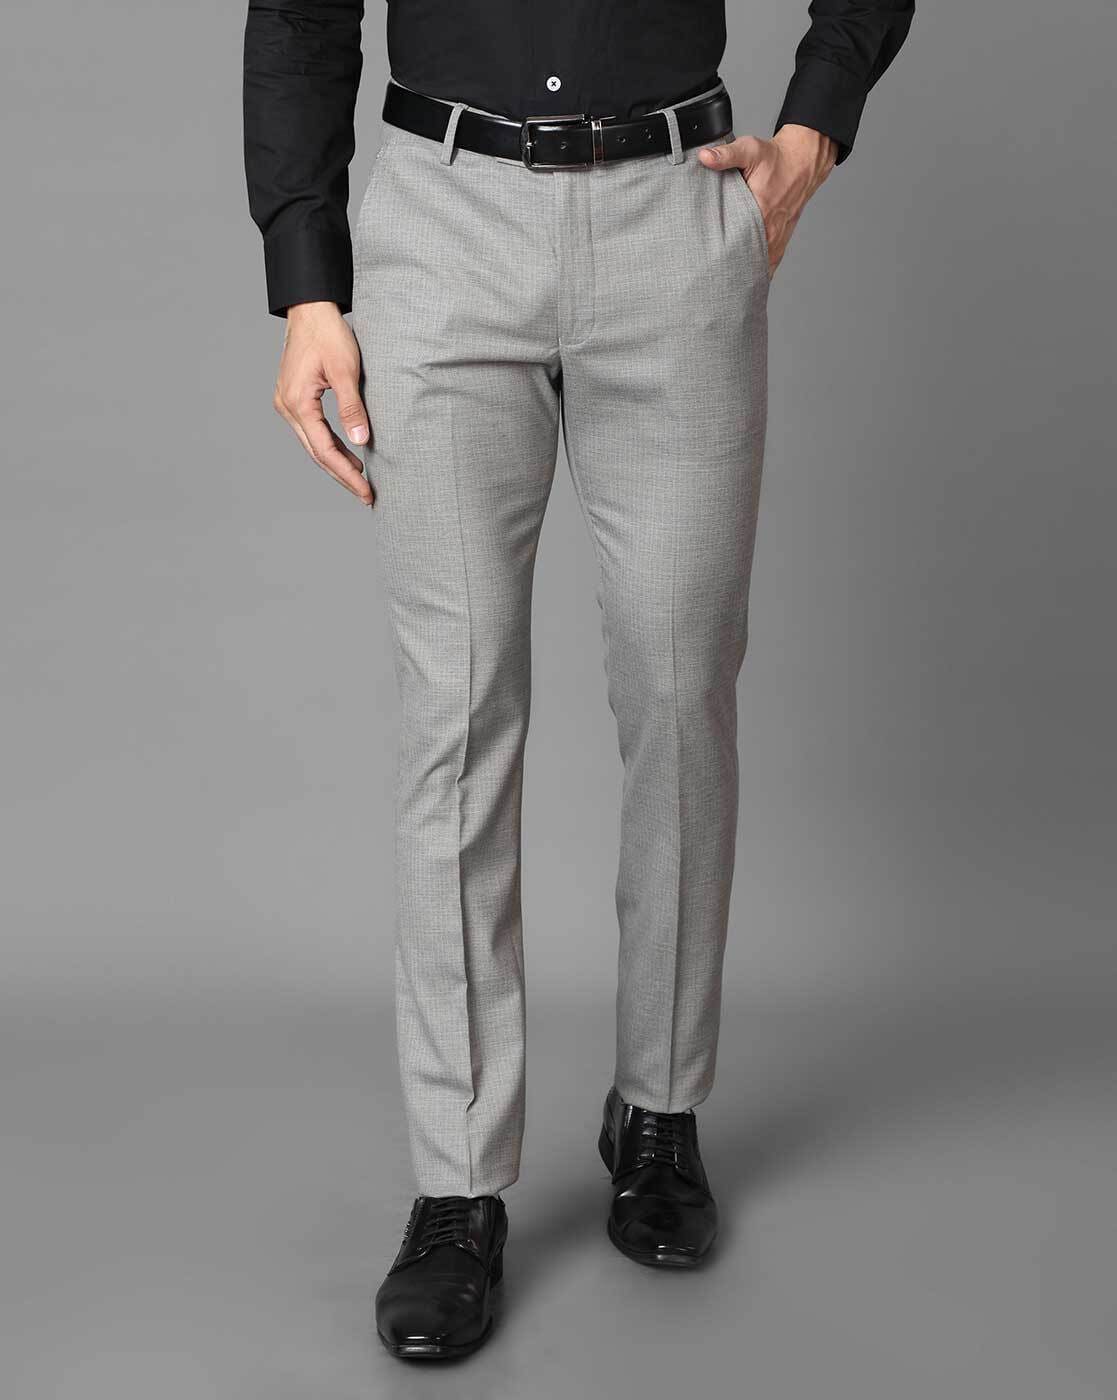 Silver Cargo Pants V9 | Black suit men, Cargo pants, Mens outfits